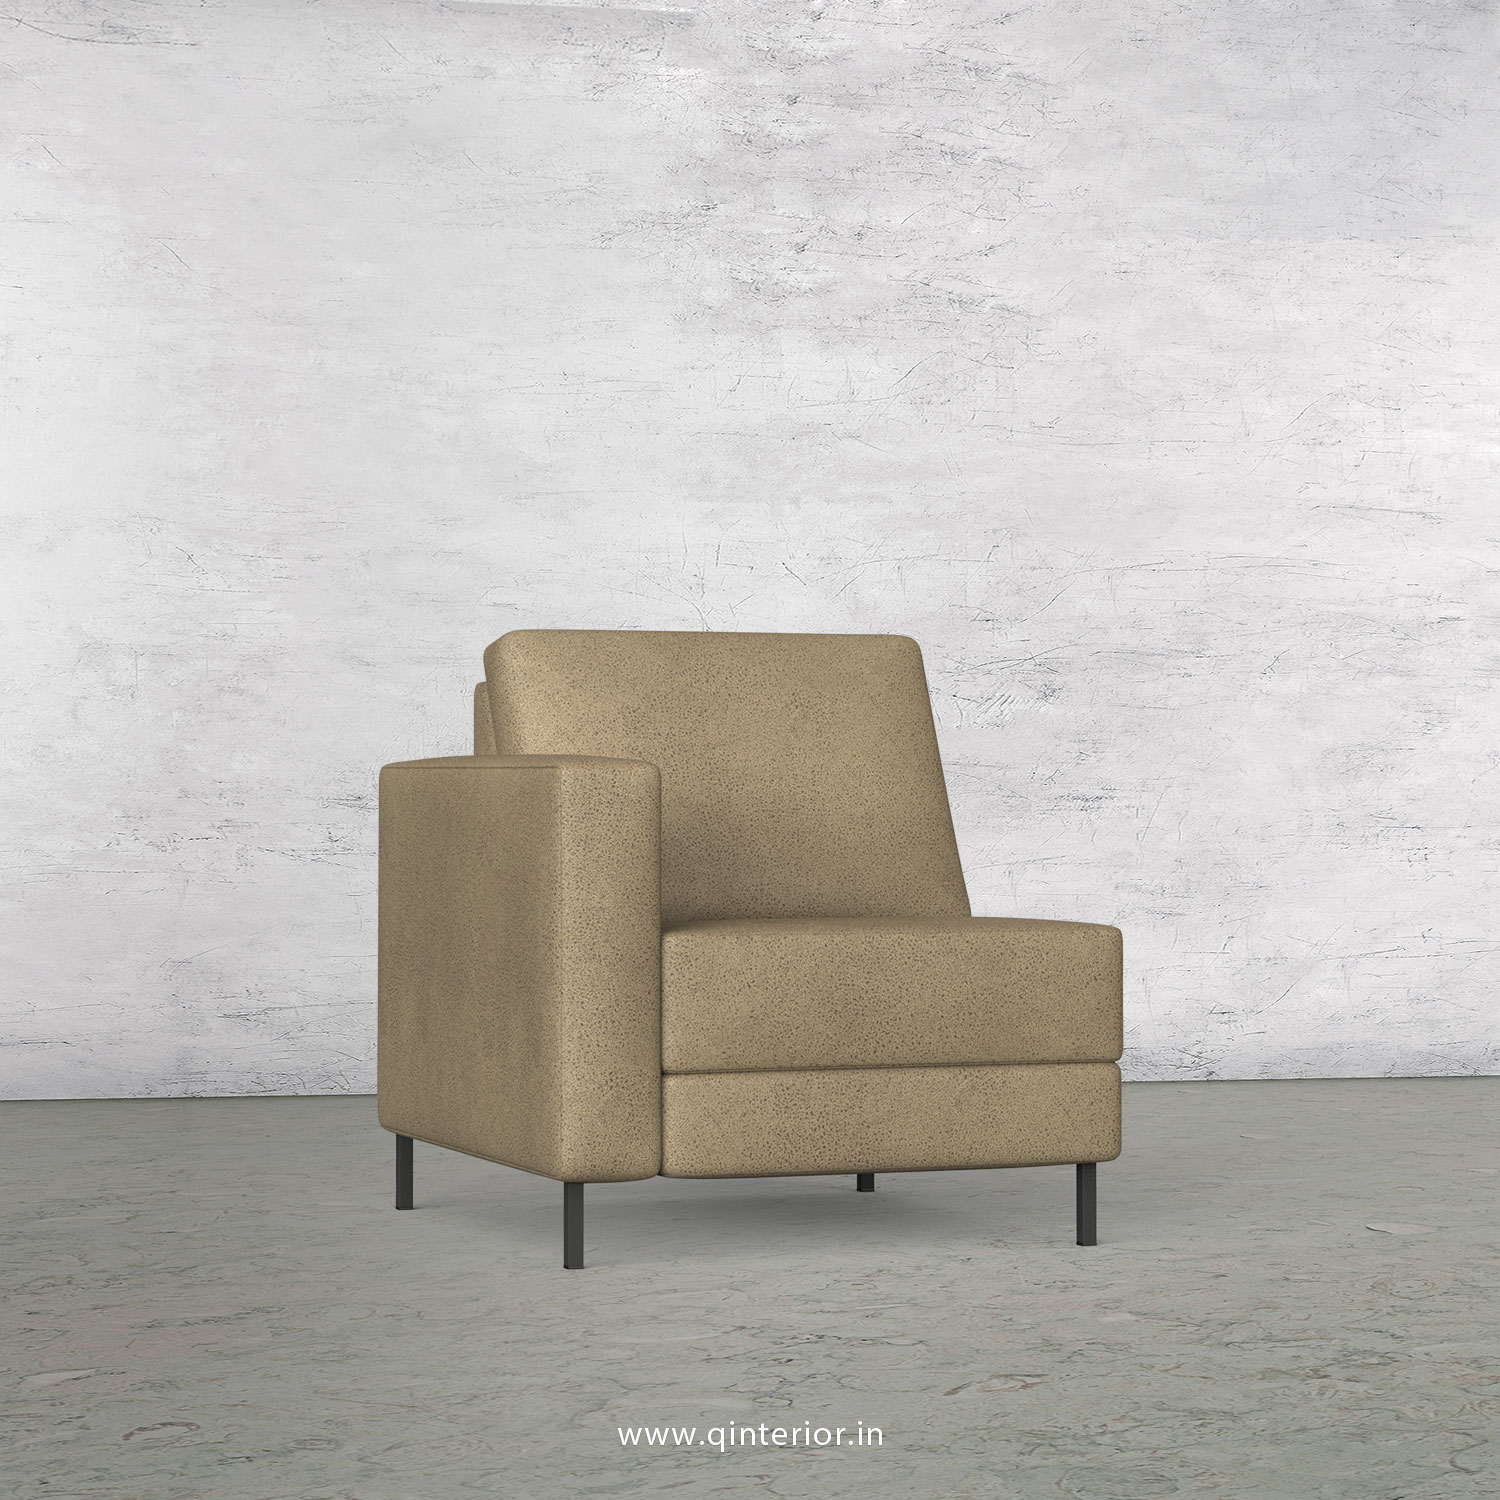 Nirvana 1 Seater Modular Sofa in Fab Leather Fabric - MSFA001 FL06